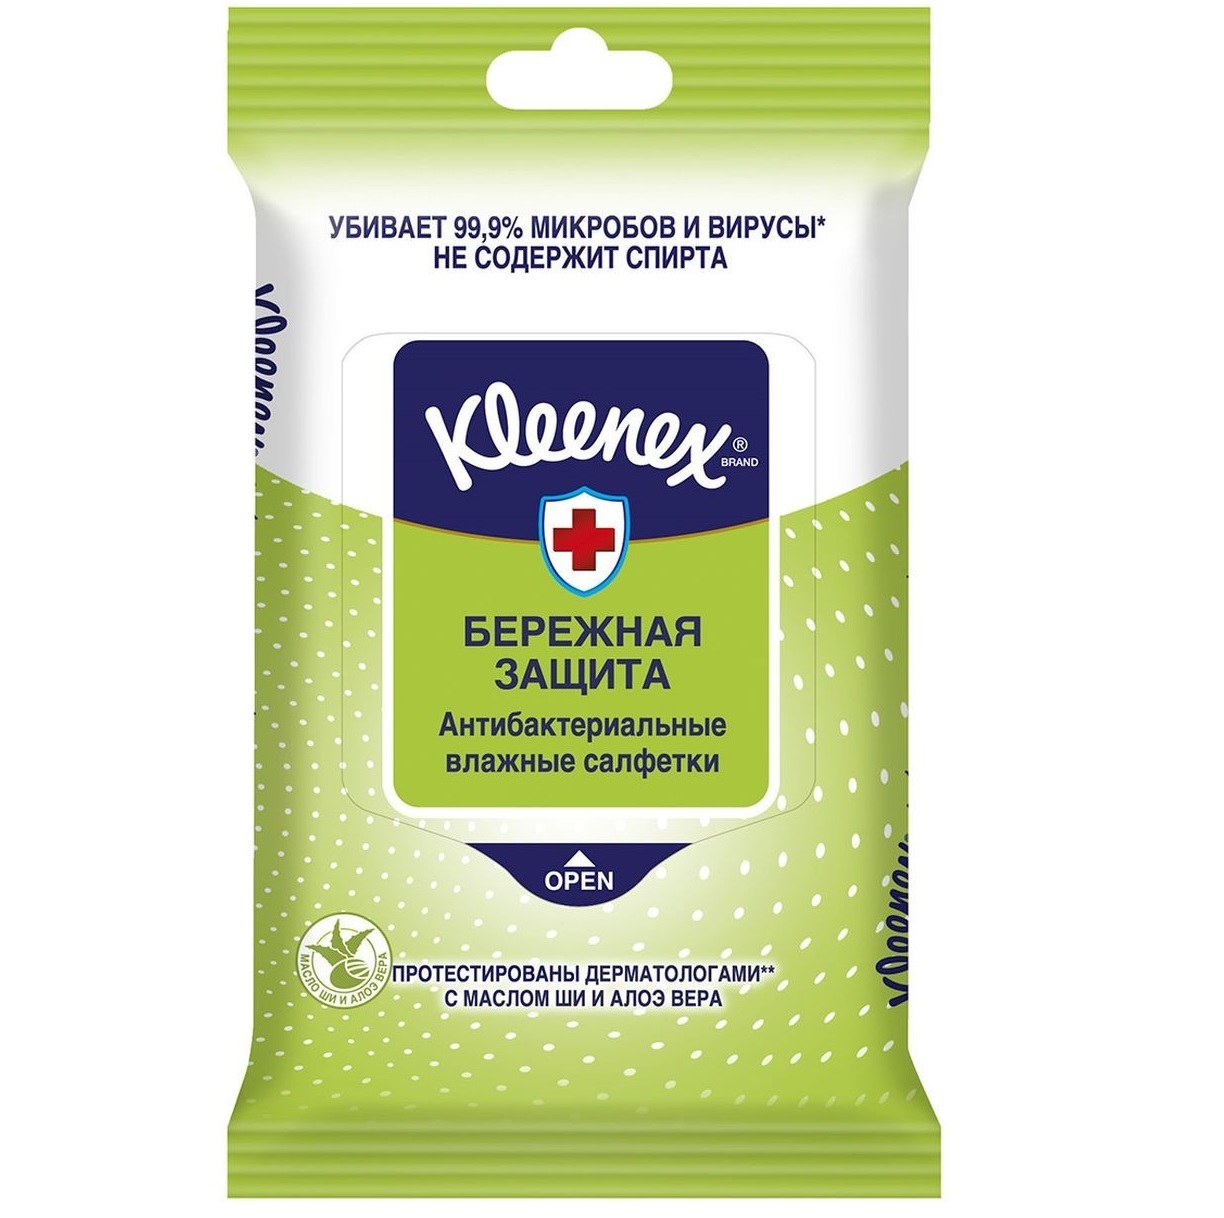 Салфетки влажные Kleenex Protect антибактериальные 10 шт.(9450211) влажные салфетки kleenex антибактериальные 10 шт 5 пачек